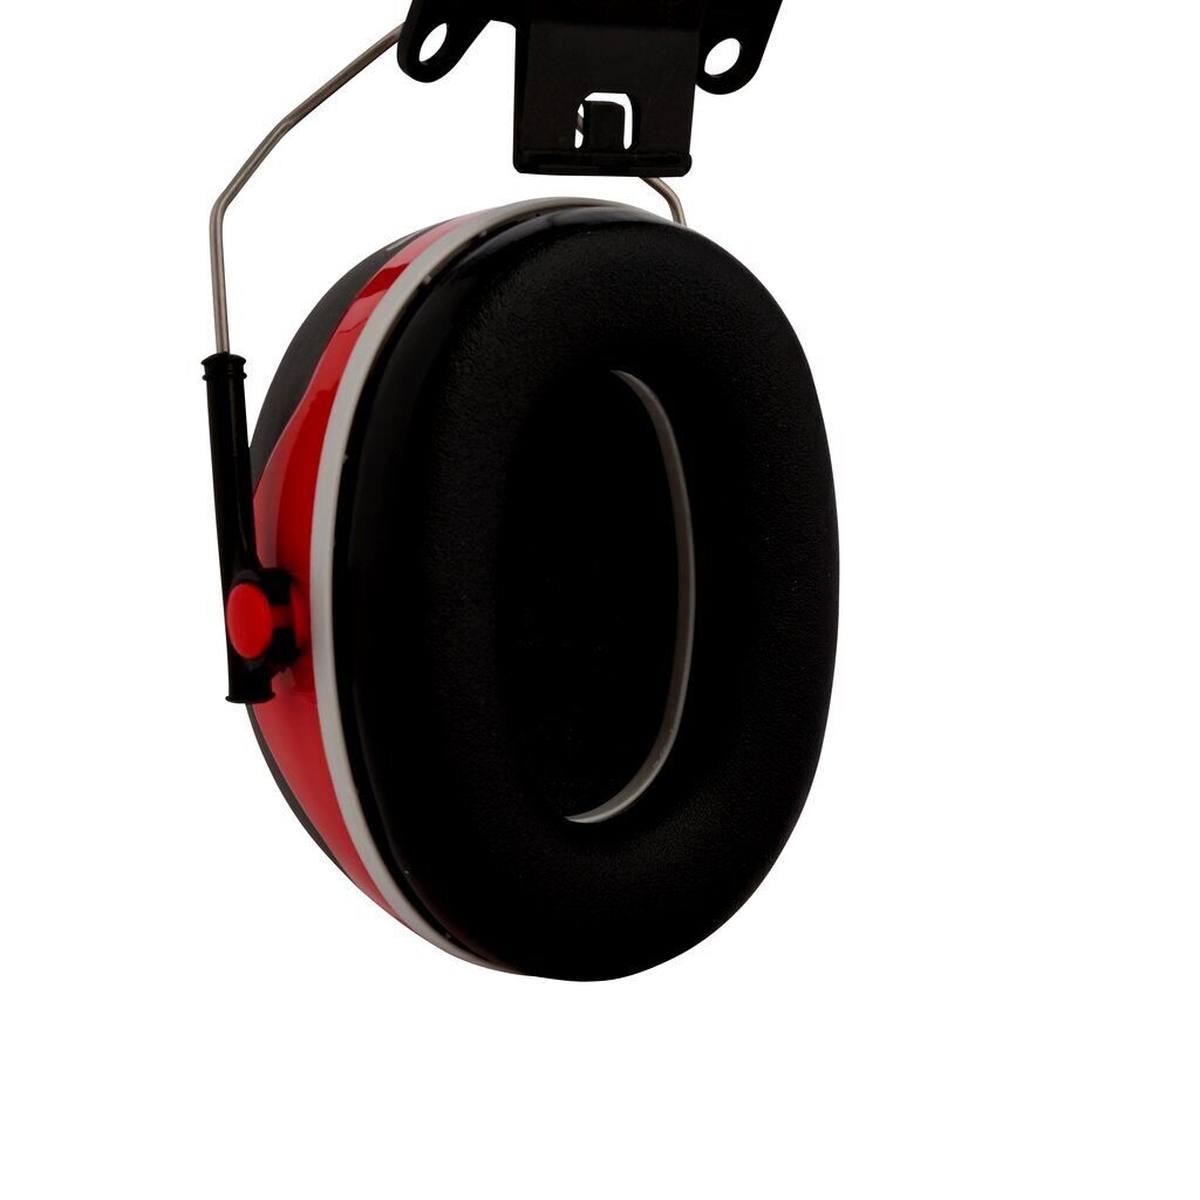 3M PELTOR Casque antibruit, X3P3E fixation sur casque, rouge, SNR=32 dB avec adaptateur de casque P3E (pour tous les casques 3M, sauf G2000)